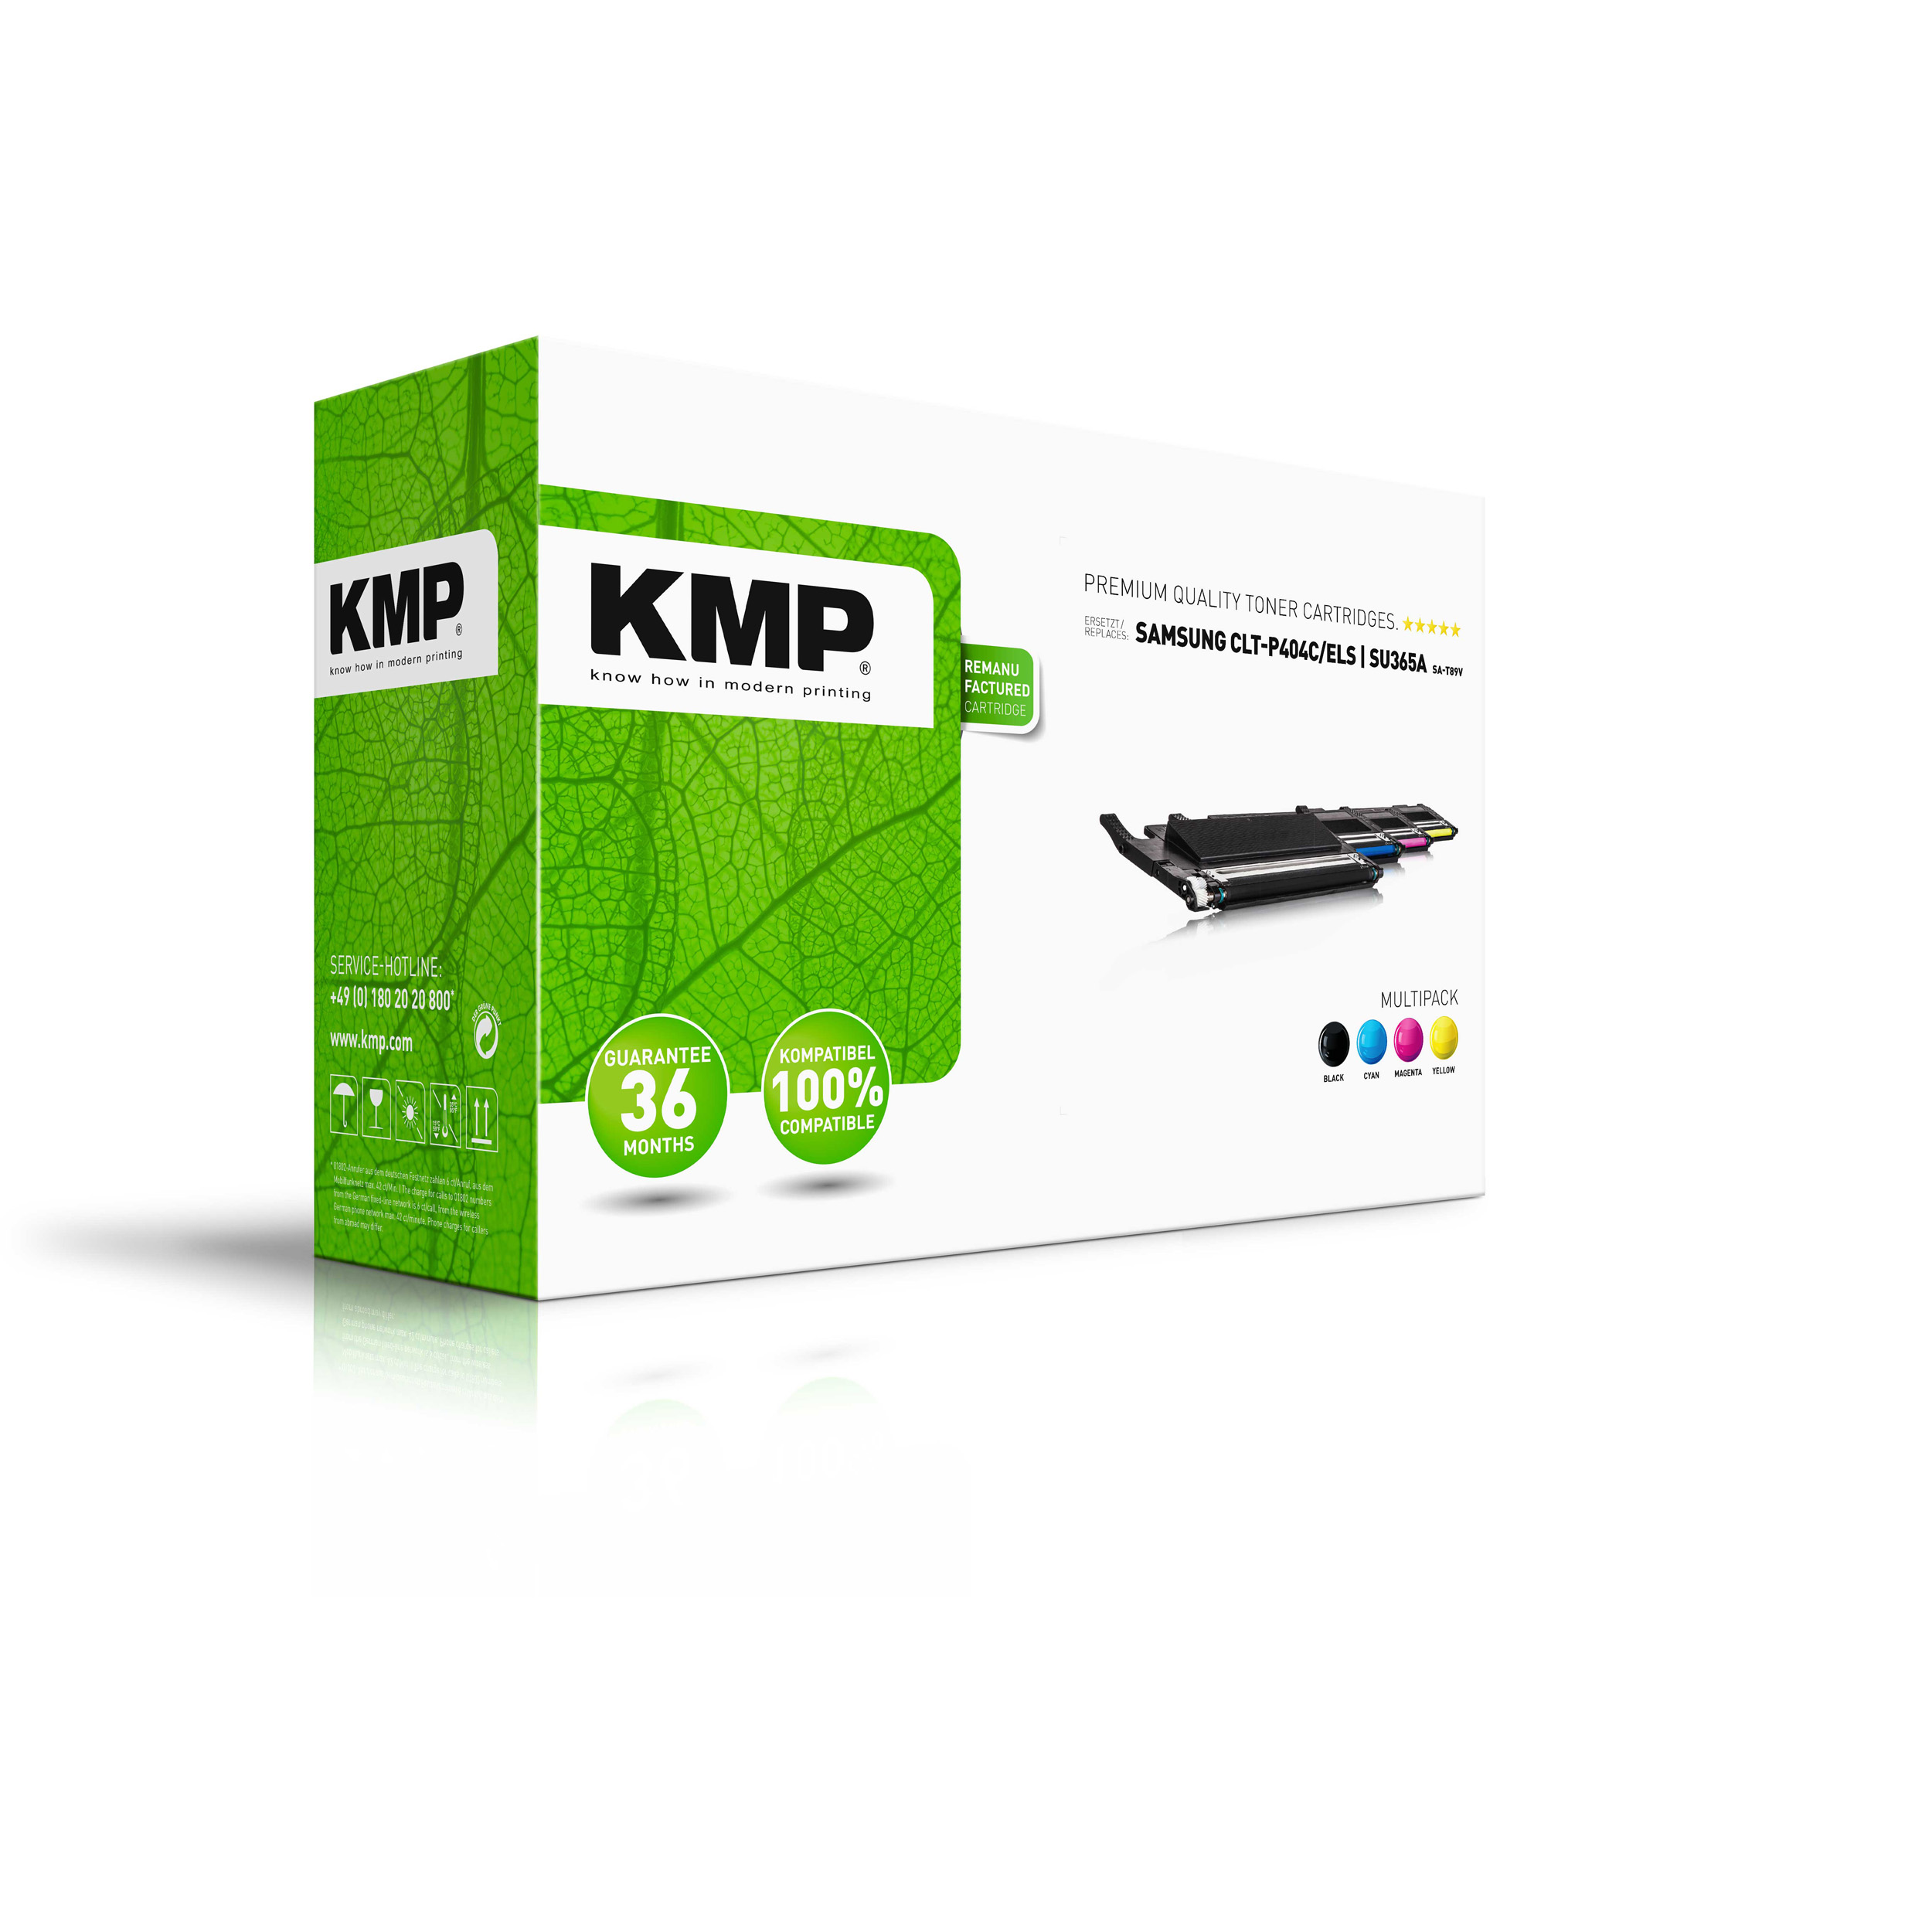 KMP Toner CLTM404SELS, HP SU444A) Multipack HP für CLTC404SELS, multicolor HP Toner CLTM404S, CLTK404S, CLTY404S (CLTK404SELS